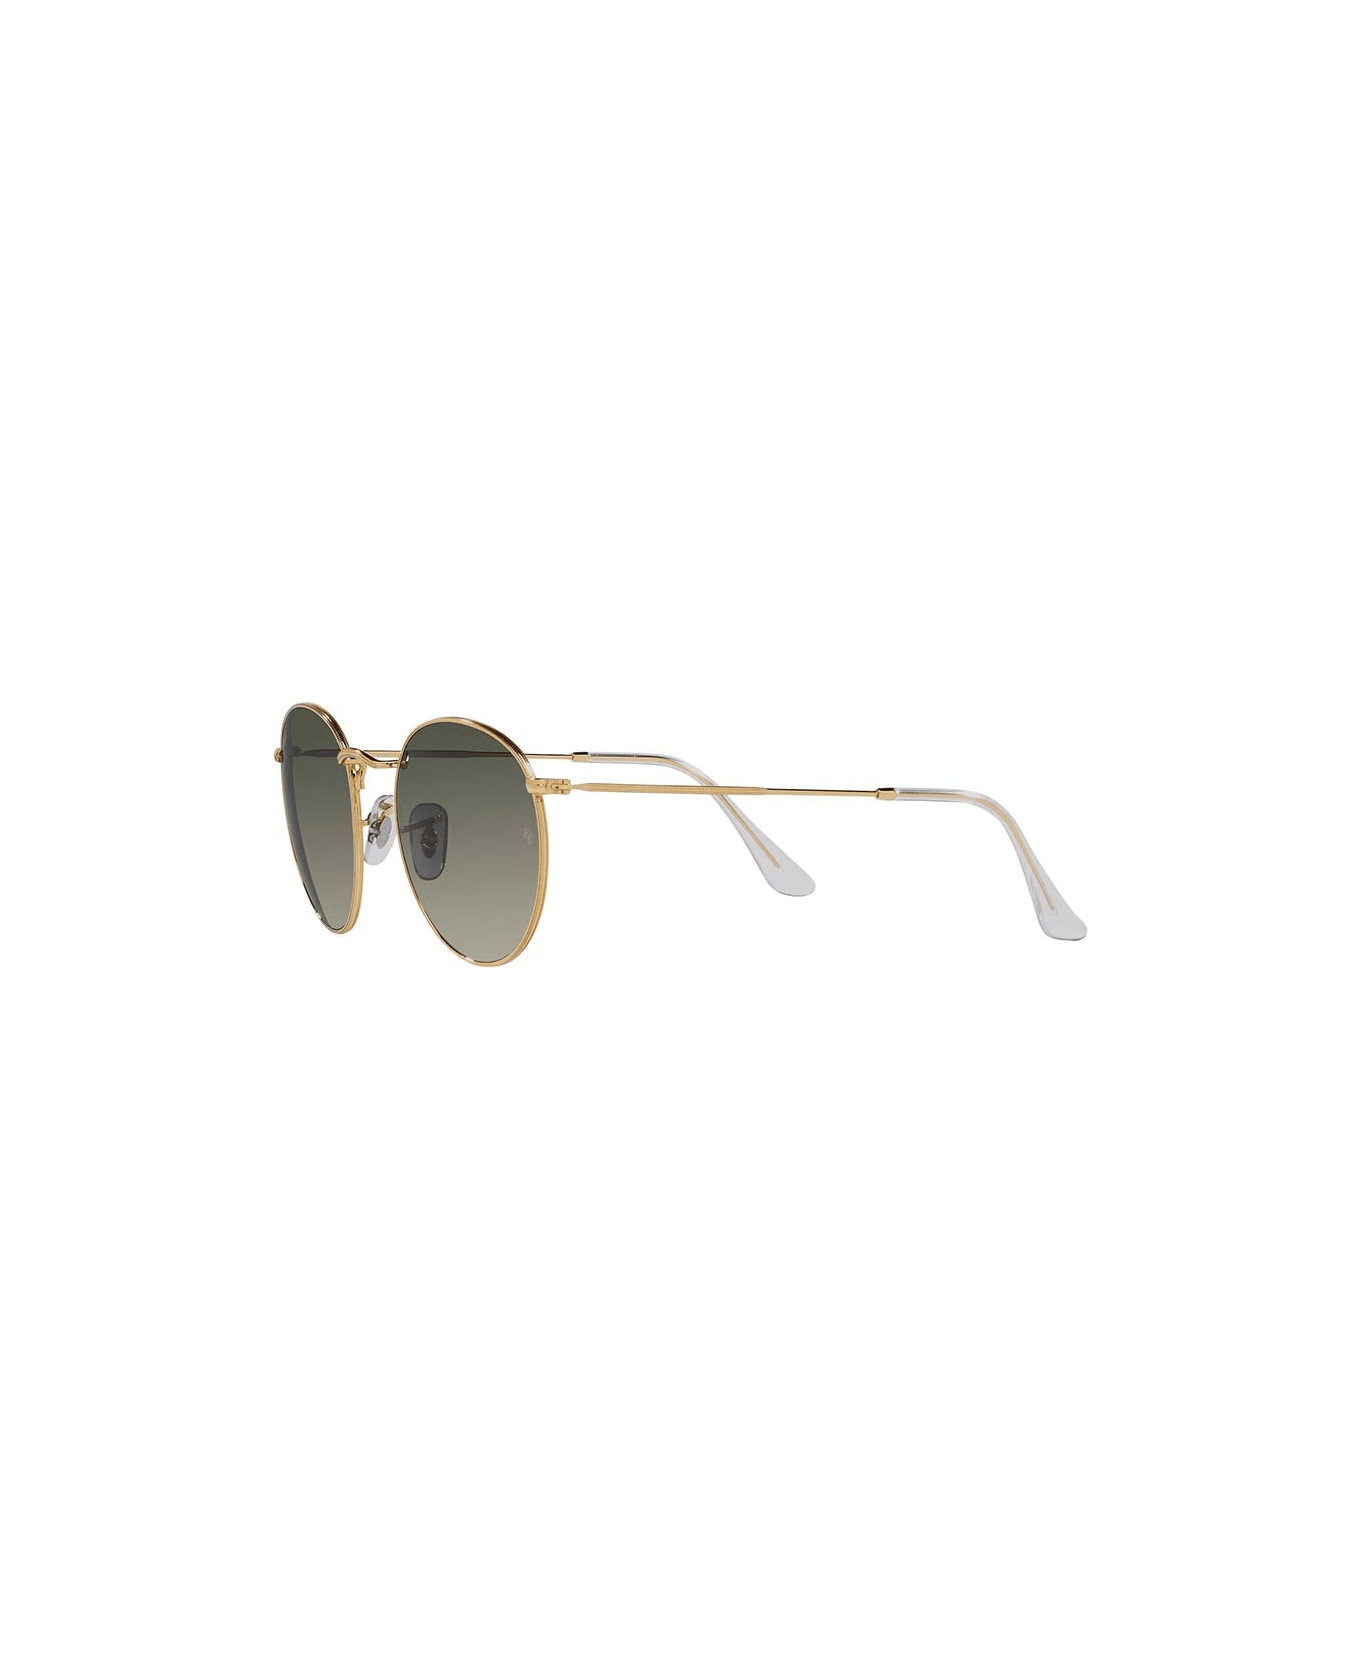 Ray-Ban Sunglasses - Oro/Grigio